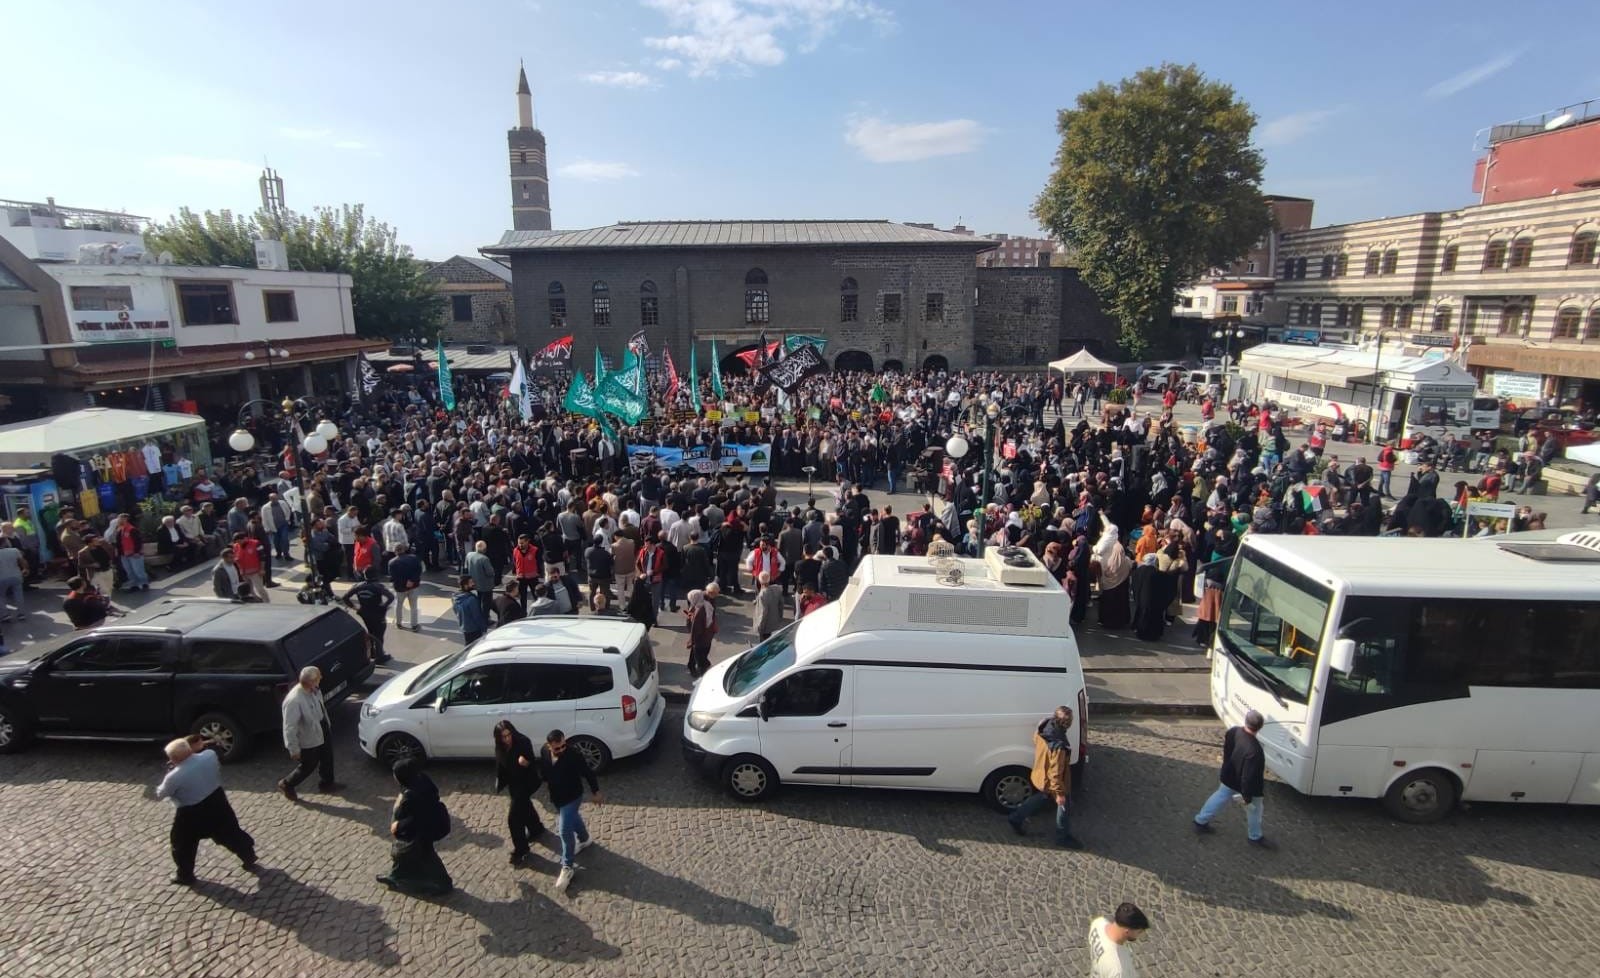 diyarbakirda-cuma-namazi-cikisi-israil-protestosu-yenicag1.jpg